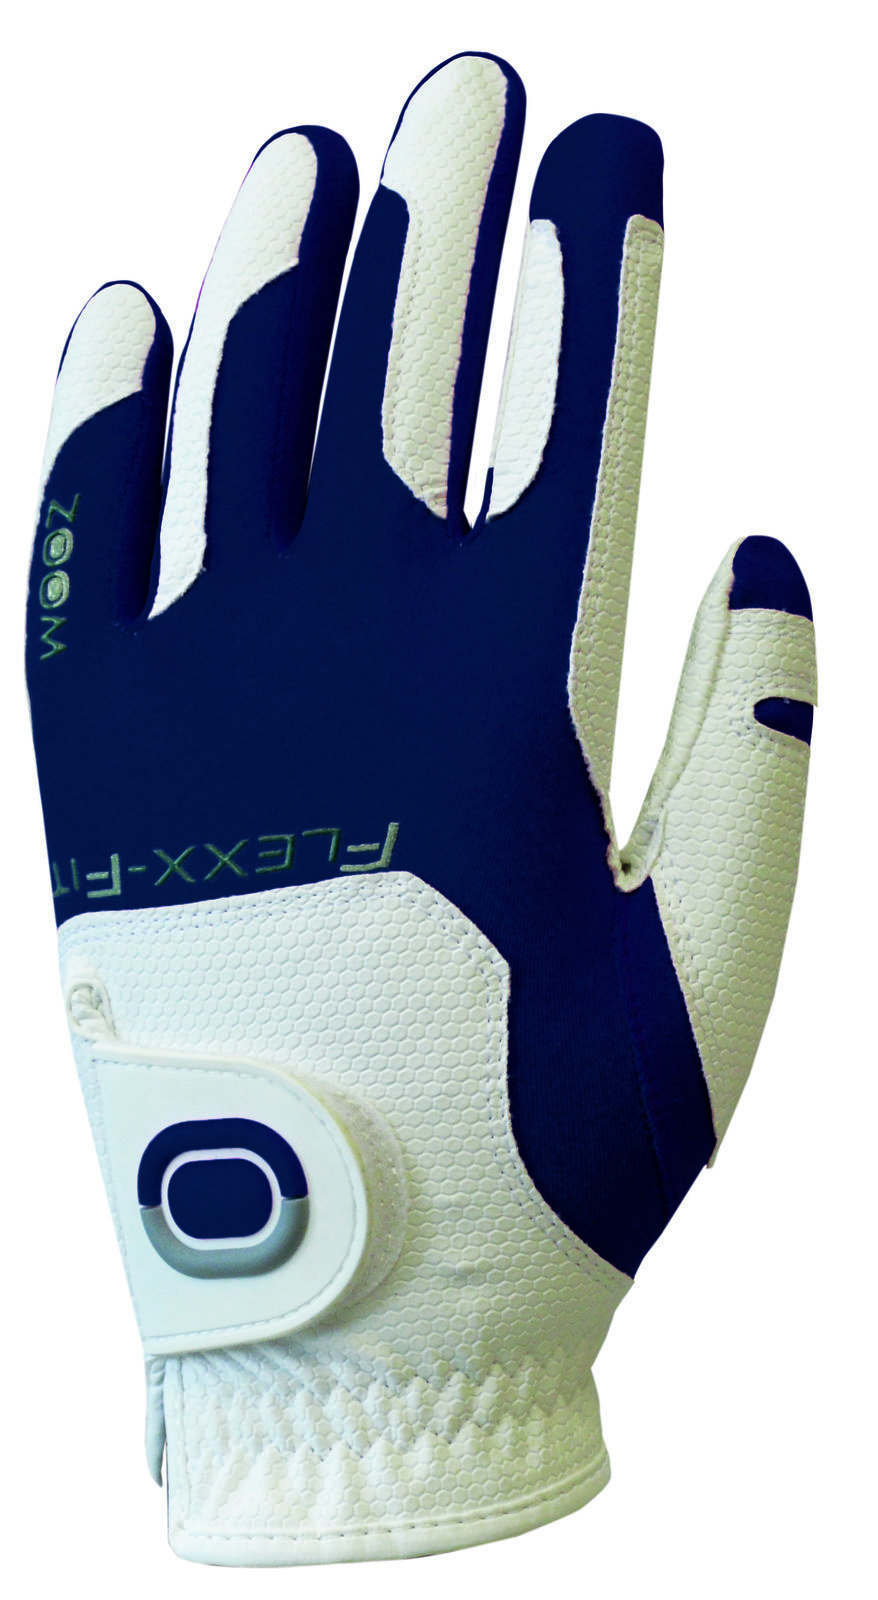 Handschuhe Zoom Gloves Weather Mens Golf Glove White/Navy LH